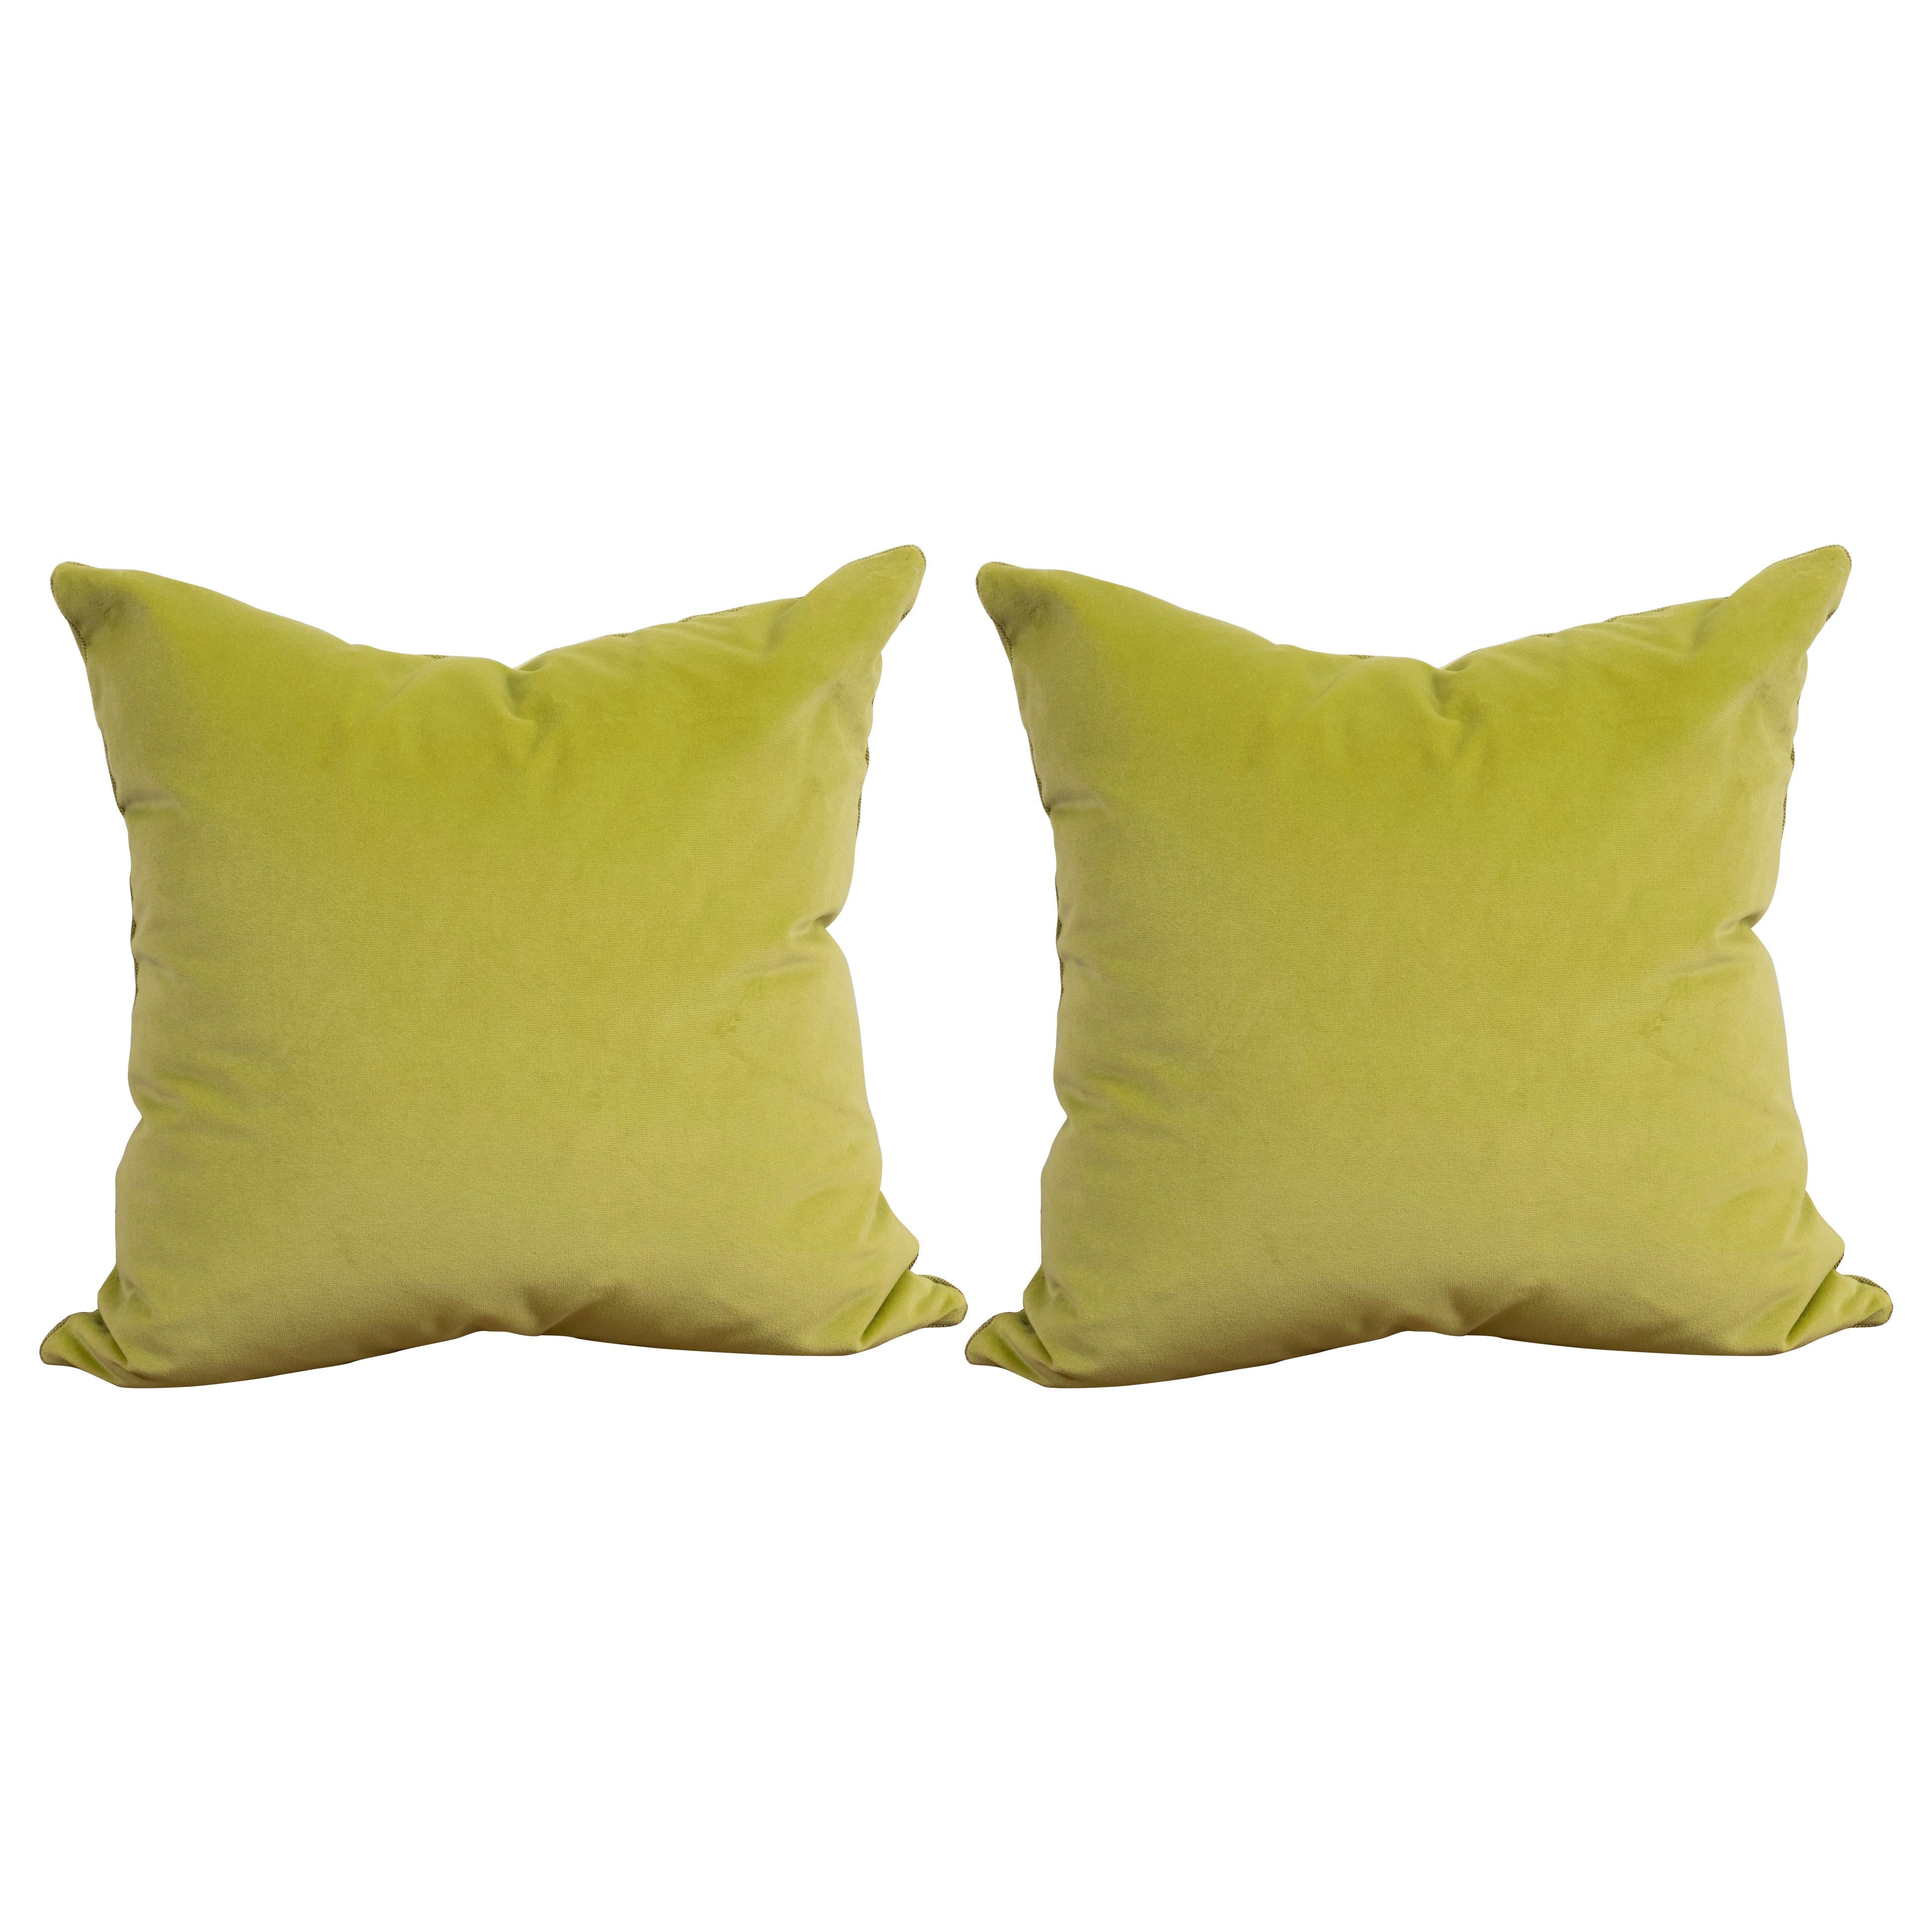 Pair of Acid Green Velvet Pillows